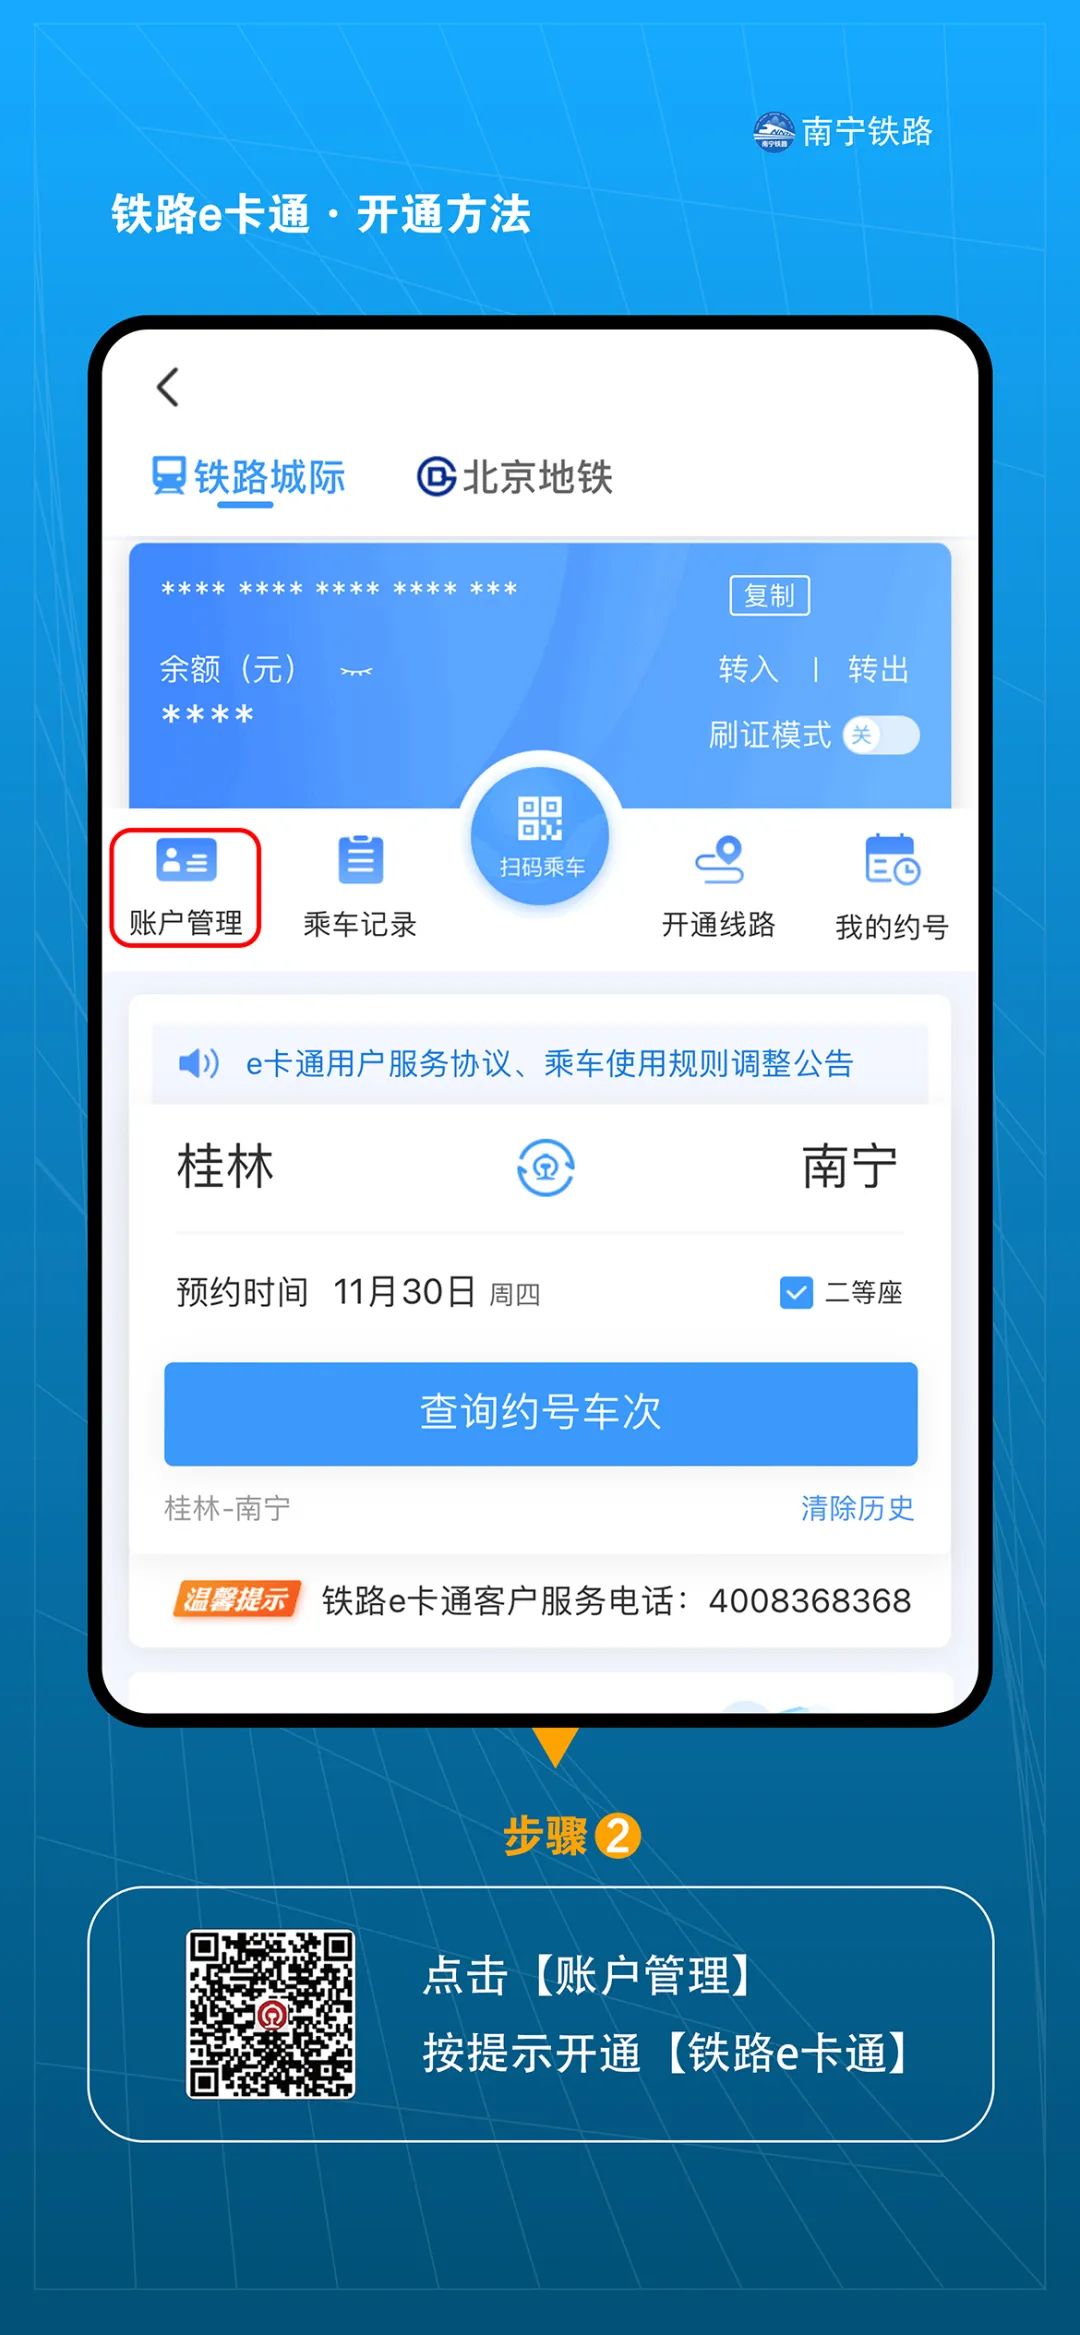 下载广西新闻客户端客户端app下载安装